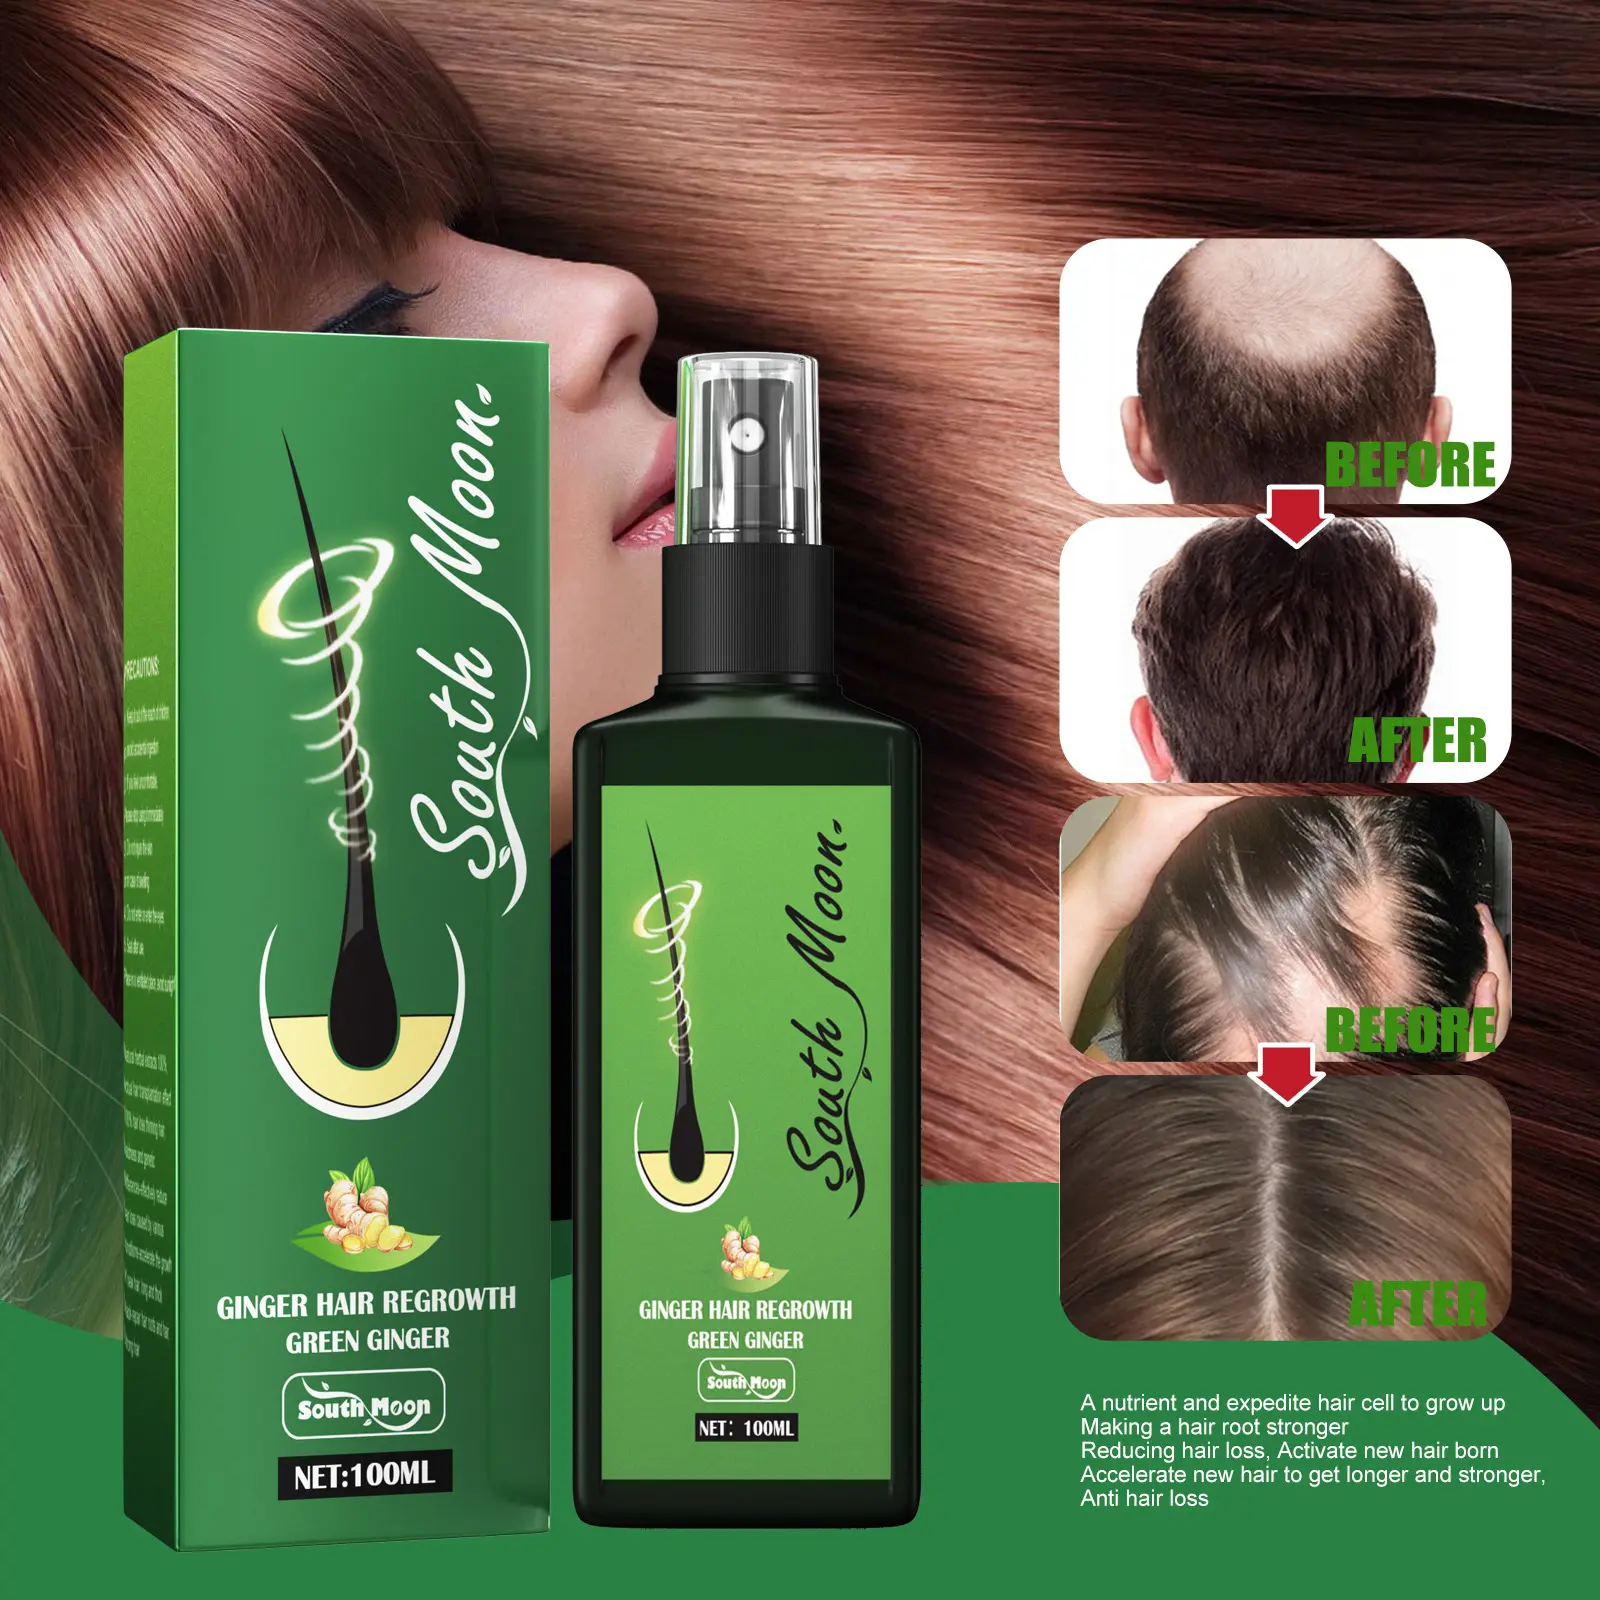 South Moon Ginger Hair Regrowth Gowthgrern Agente de aceite para el crecimiento del cabello Evita la pérdida de cabello Suero nutritivo para el crecimiento